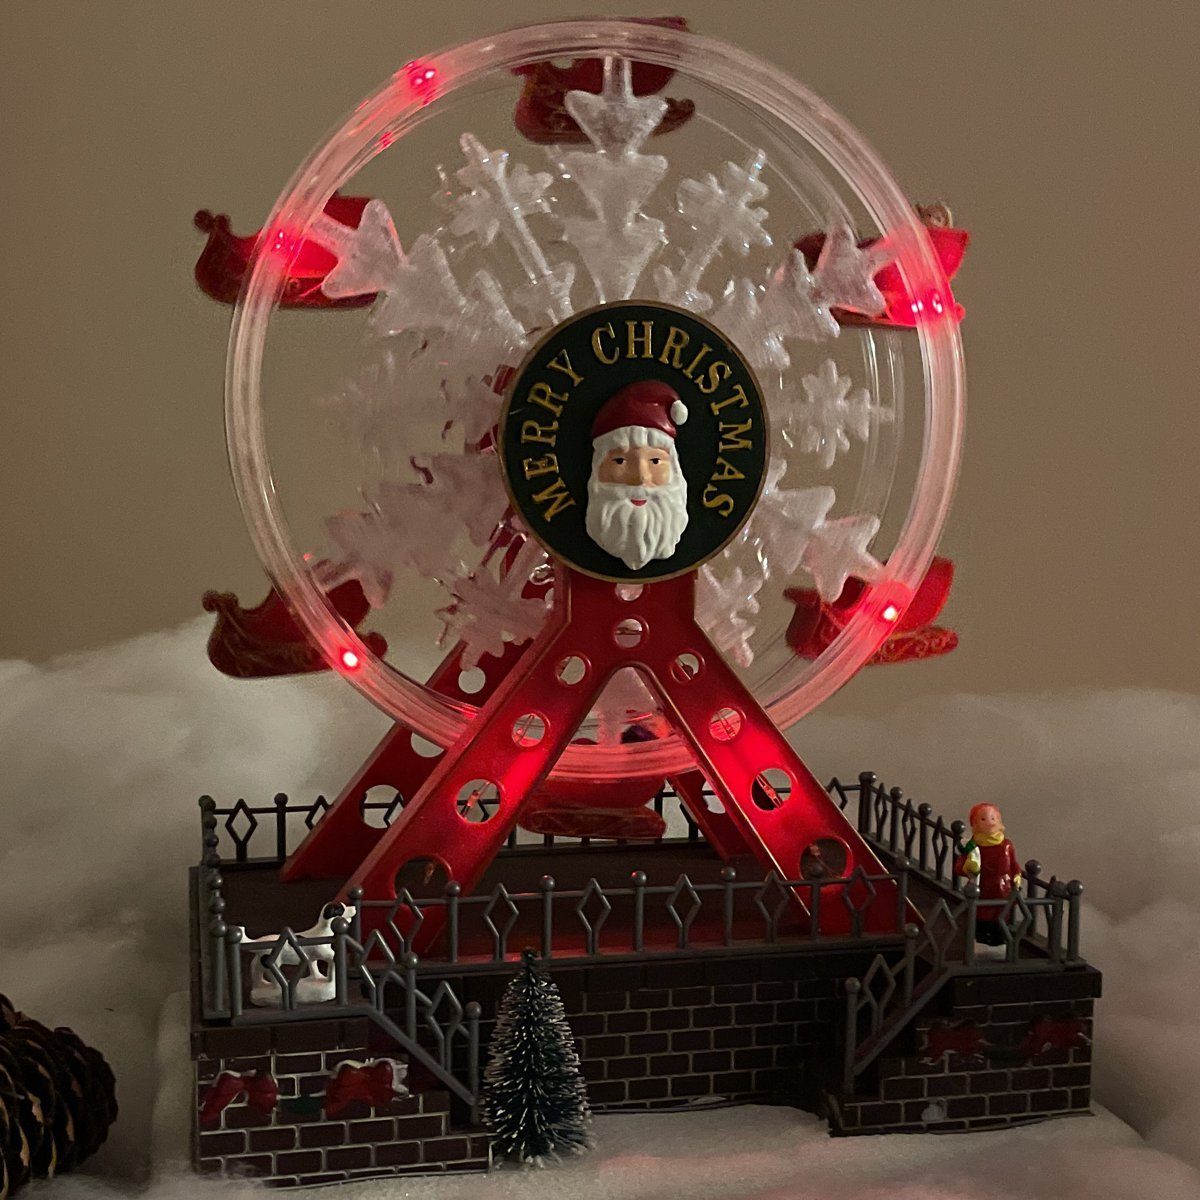 e4fun Weihnachtsdorf Weihnachtsdorf und Beleuchtung,Musik LED mit Riesenrad Dreh-Riesenrad